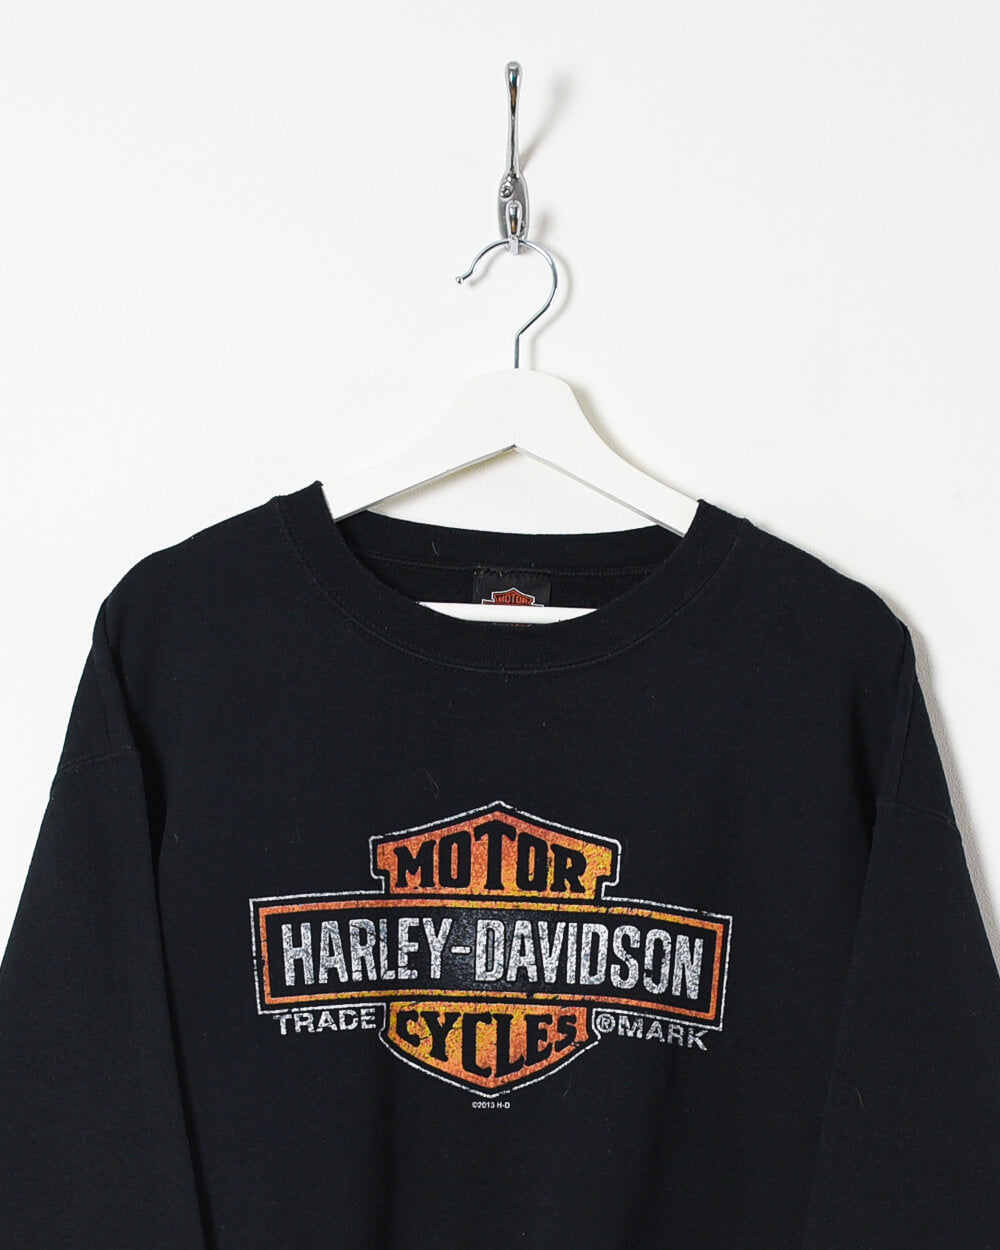 Black Harley Davidson Motorcycles Sweatshirt - Large